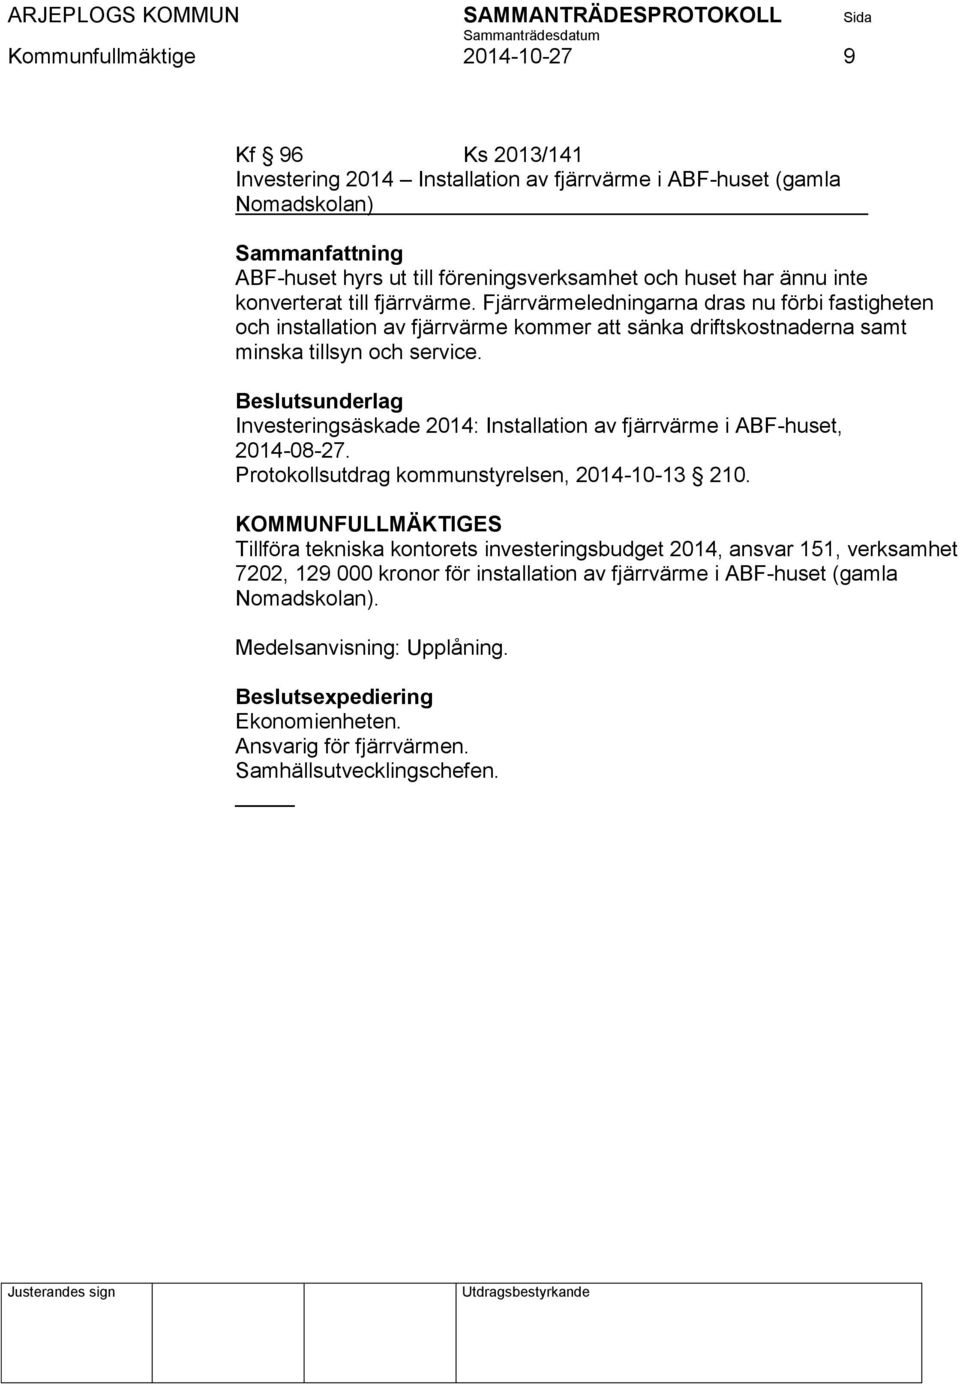 Beslutsunderlag Investeringsäskade 2014: Installation av fjärrvärme i ABF-huset, 2014-08-27. Protokollsutdrag kommunstyrelsen, 2014-10-13 210.